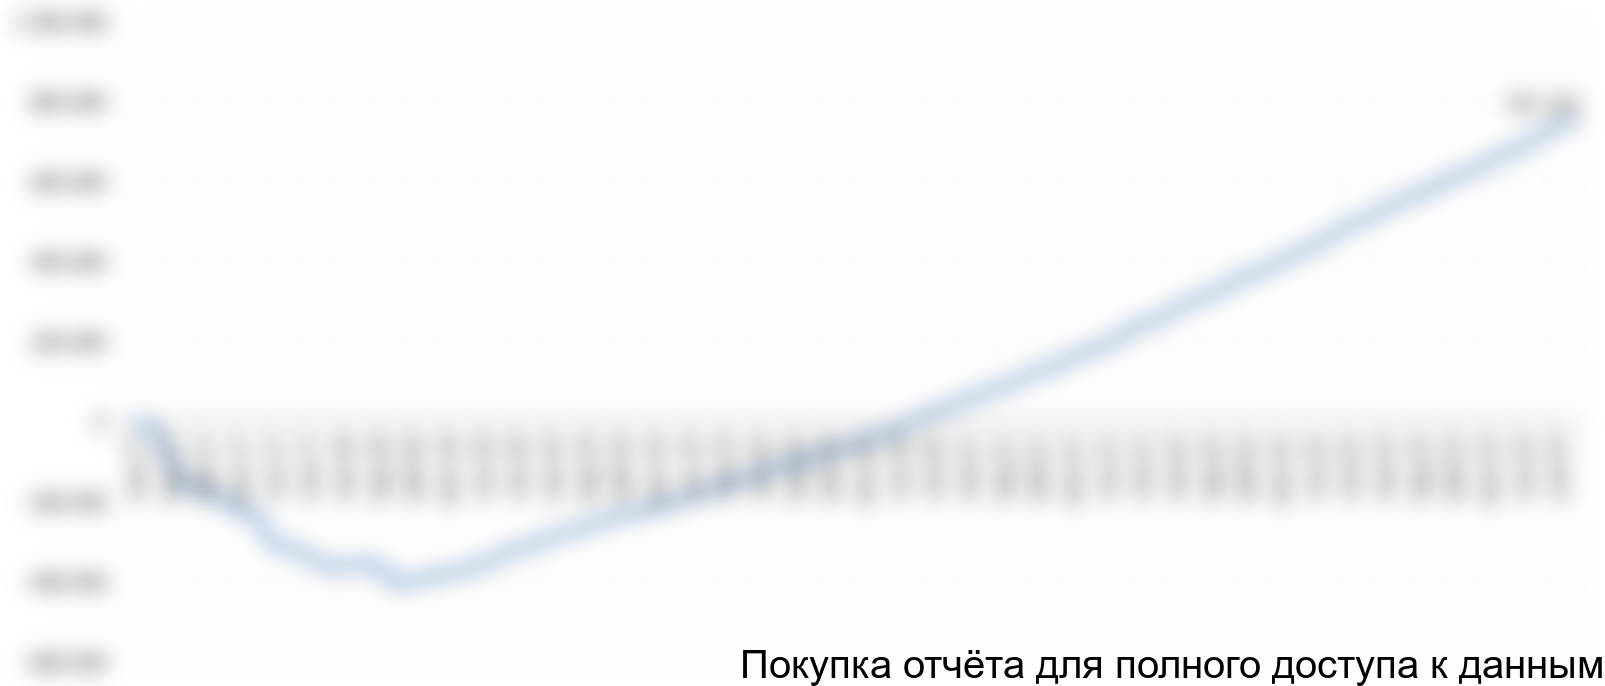 Рисунок 7.5 График чистого денежного потока, тыс. руб.